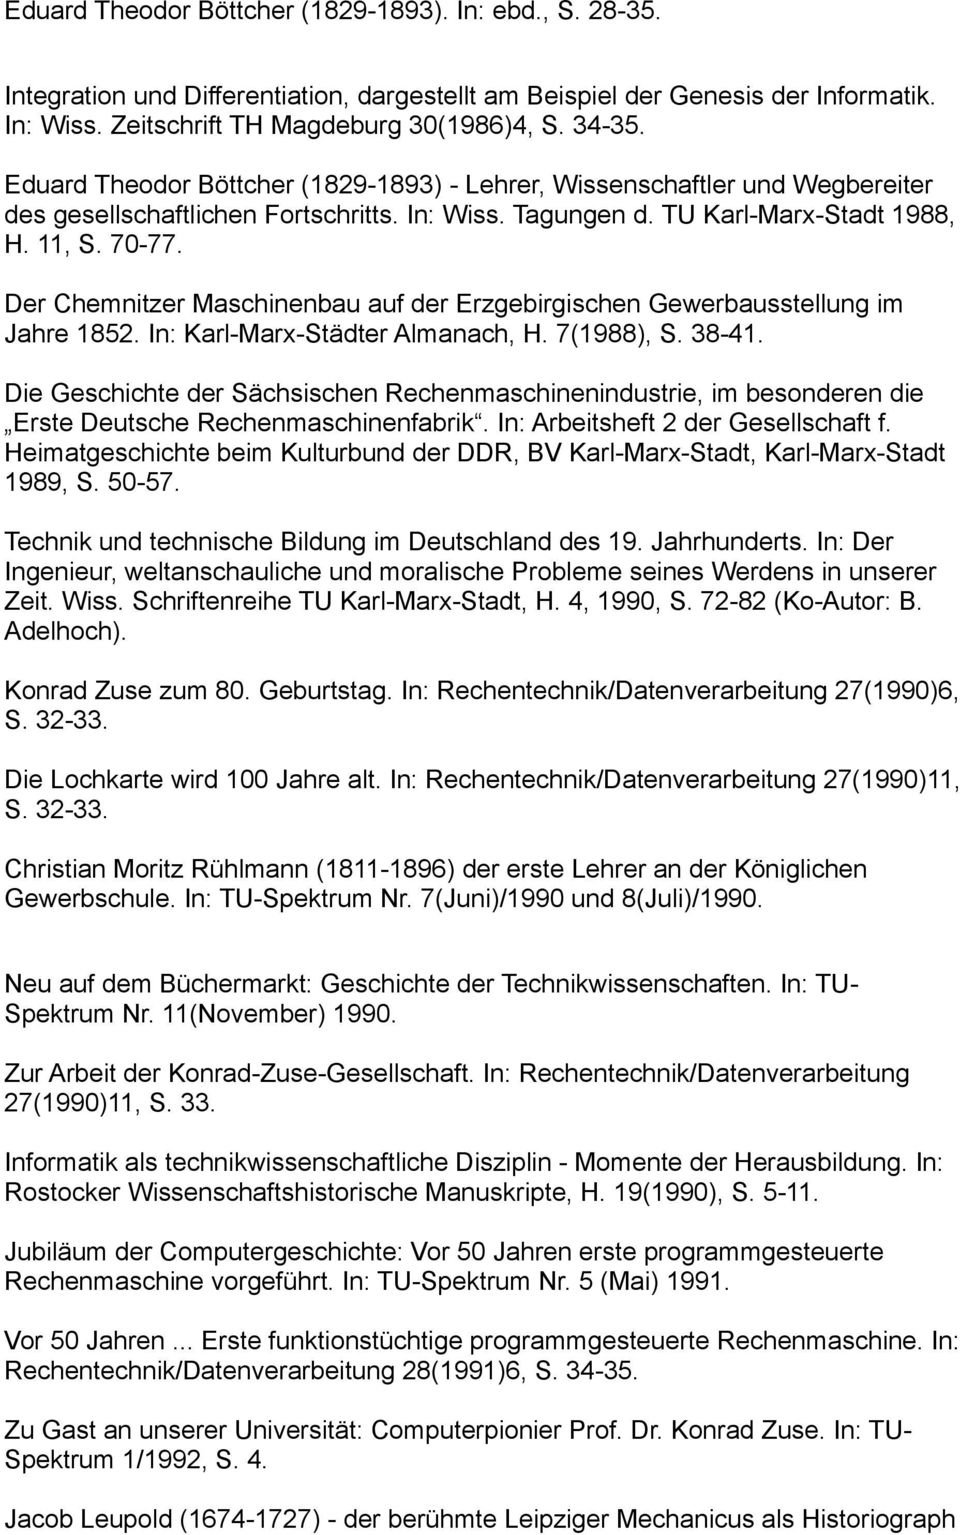 Der Chemnitzer Maschinenbau auf der Erzgebirgischen Gewerbausstellung im Jahre 1852. In: Karl-Marx-Städter Almanach, H. 7(1988), S. 38-41.